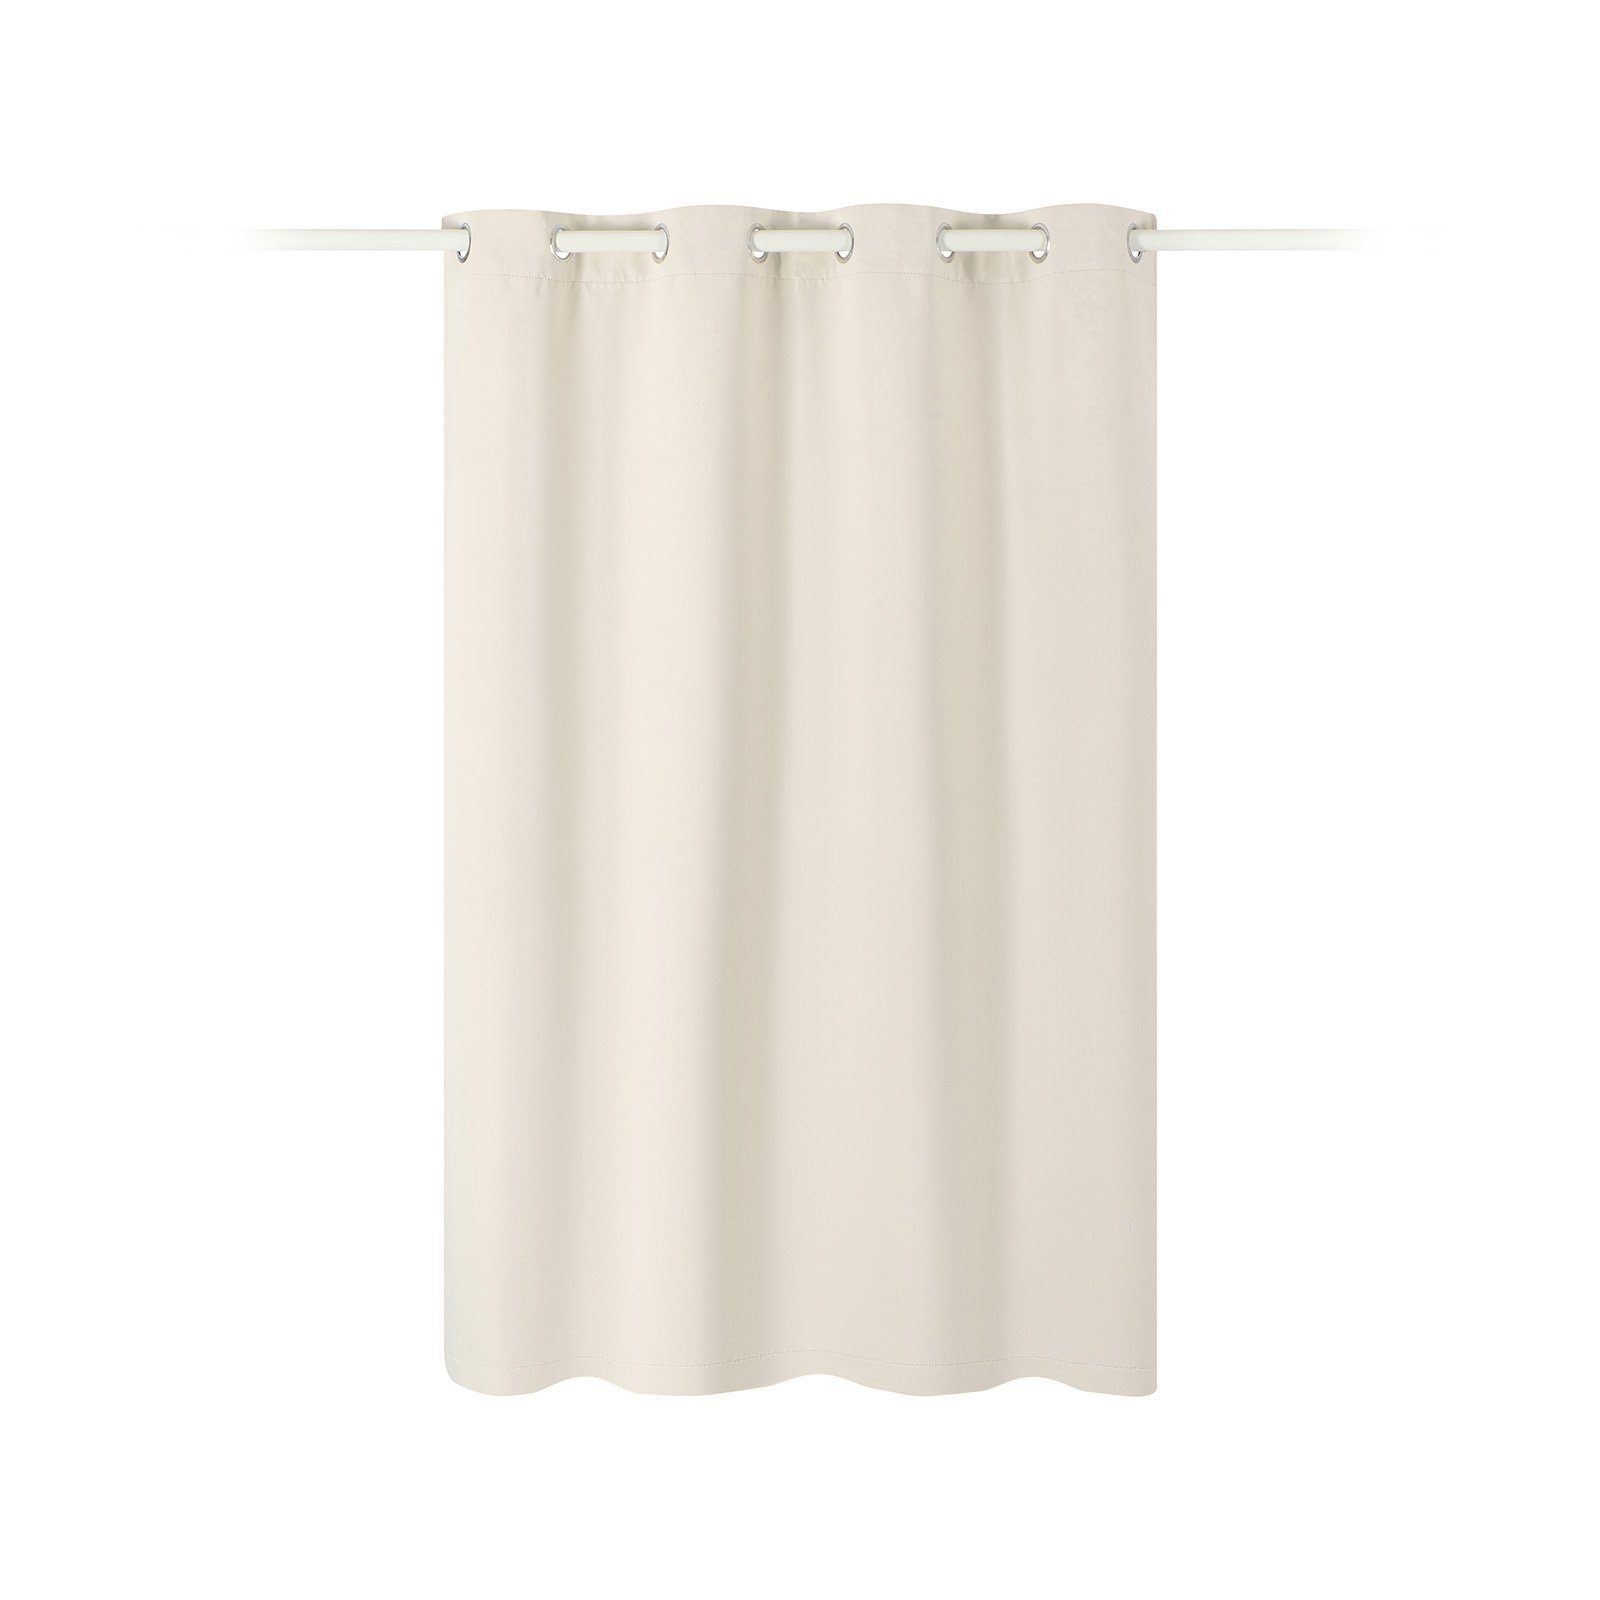 Vorhang Vorhang blickdicht 140x175cm - Ösenschal Verdunkelung - 100% Polyester, JEMIDI Creme